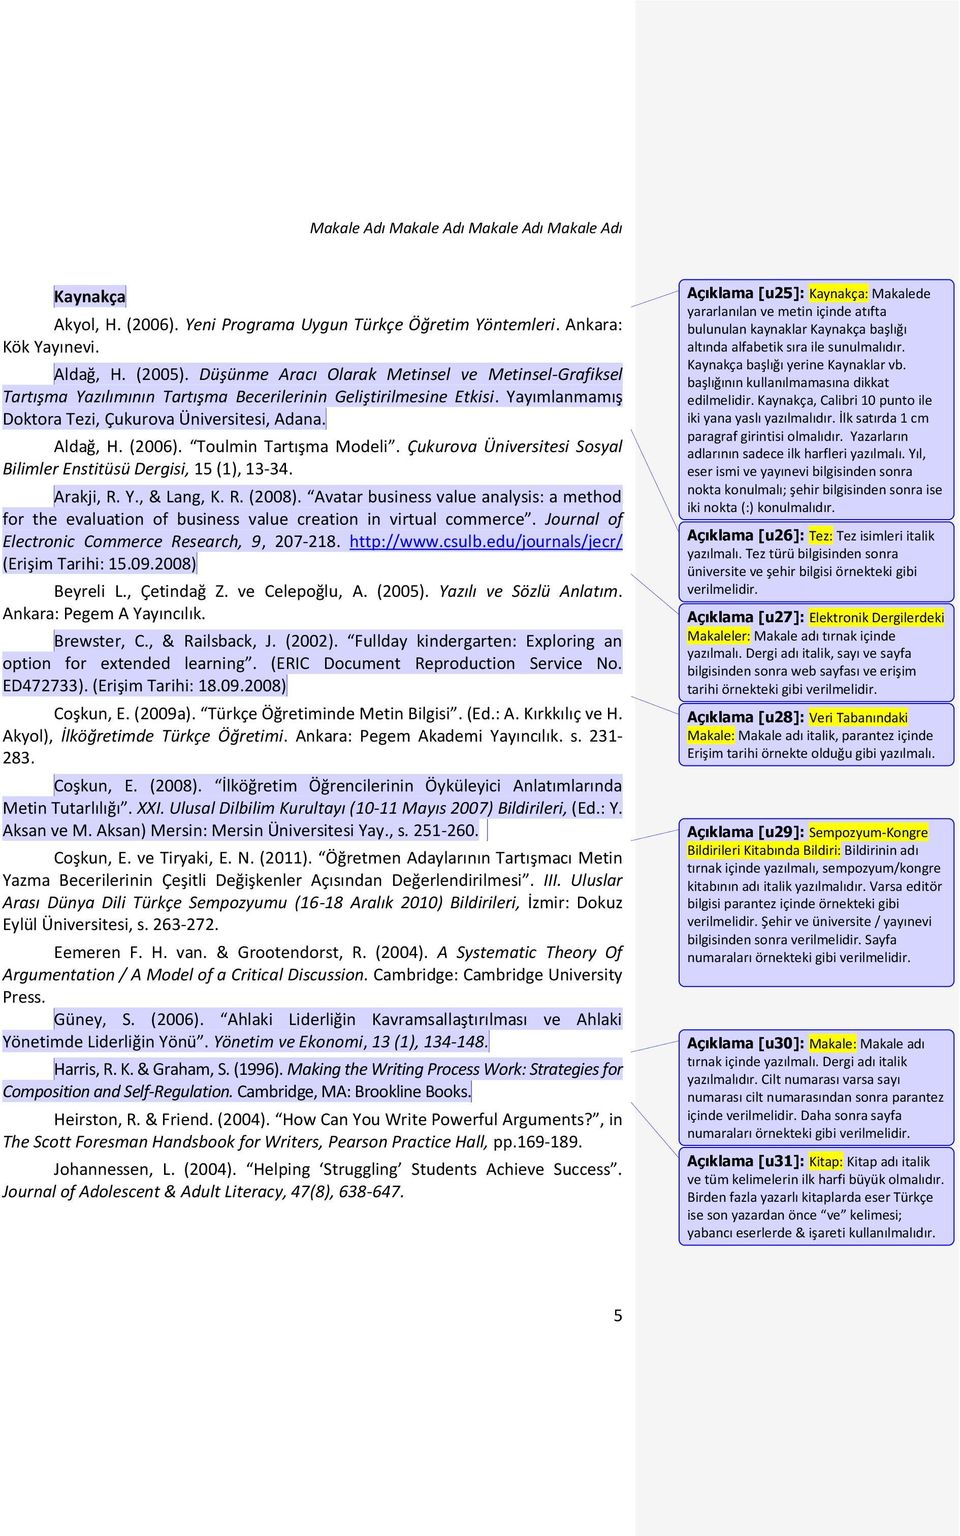 Toulmin Tartışma Modeli. Çukurova Üniversitesi Sosyal Bilimler Enstitüsü Dergisi, 15 (1), 13-34. Arakji, R. Y., & Lang, K. R. (2008).